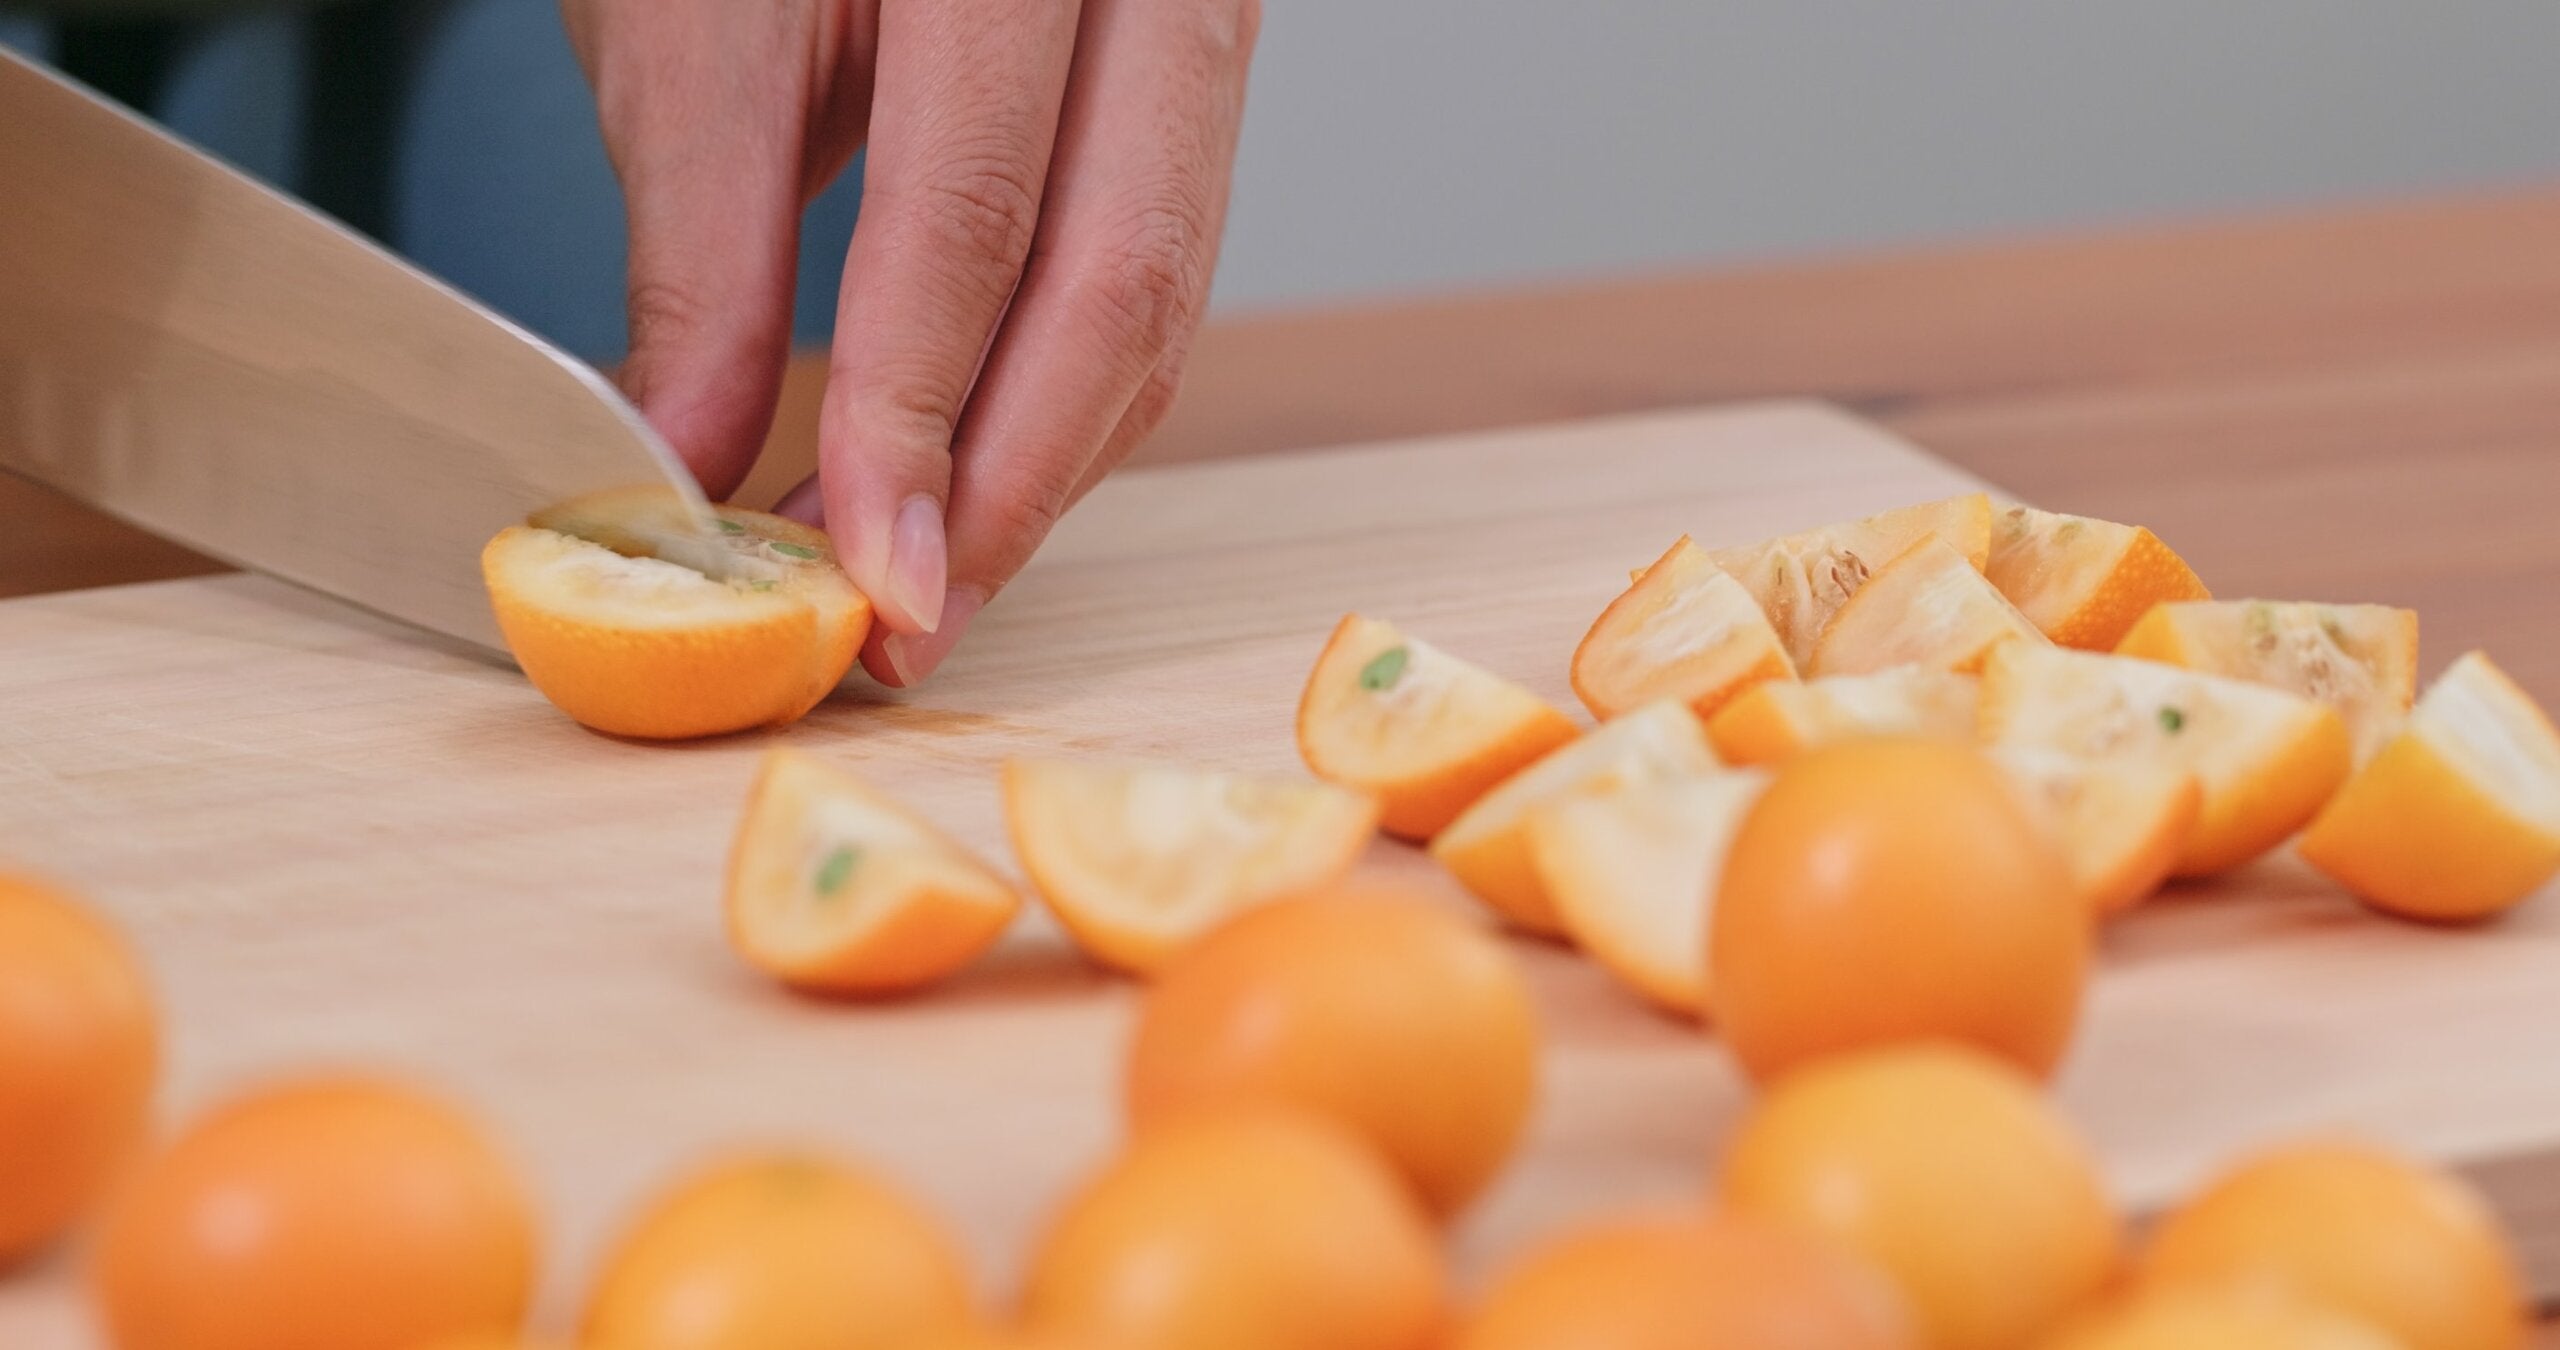 Le kumquat est préparé de différentes manières